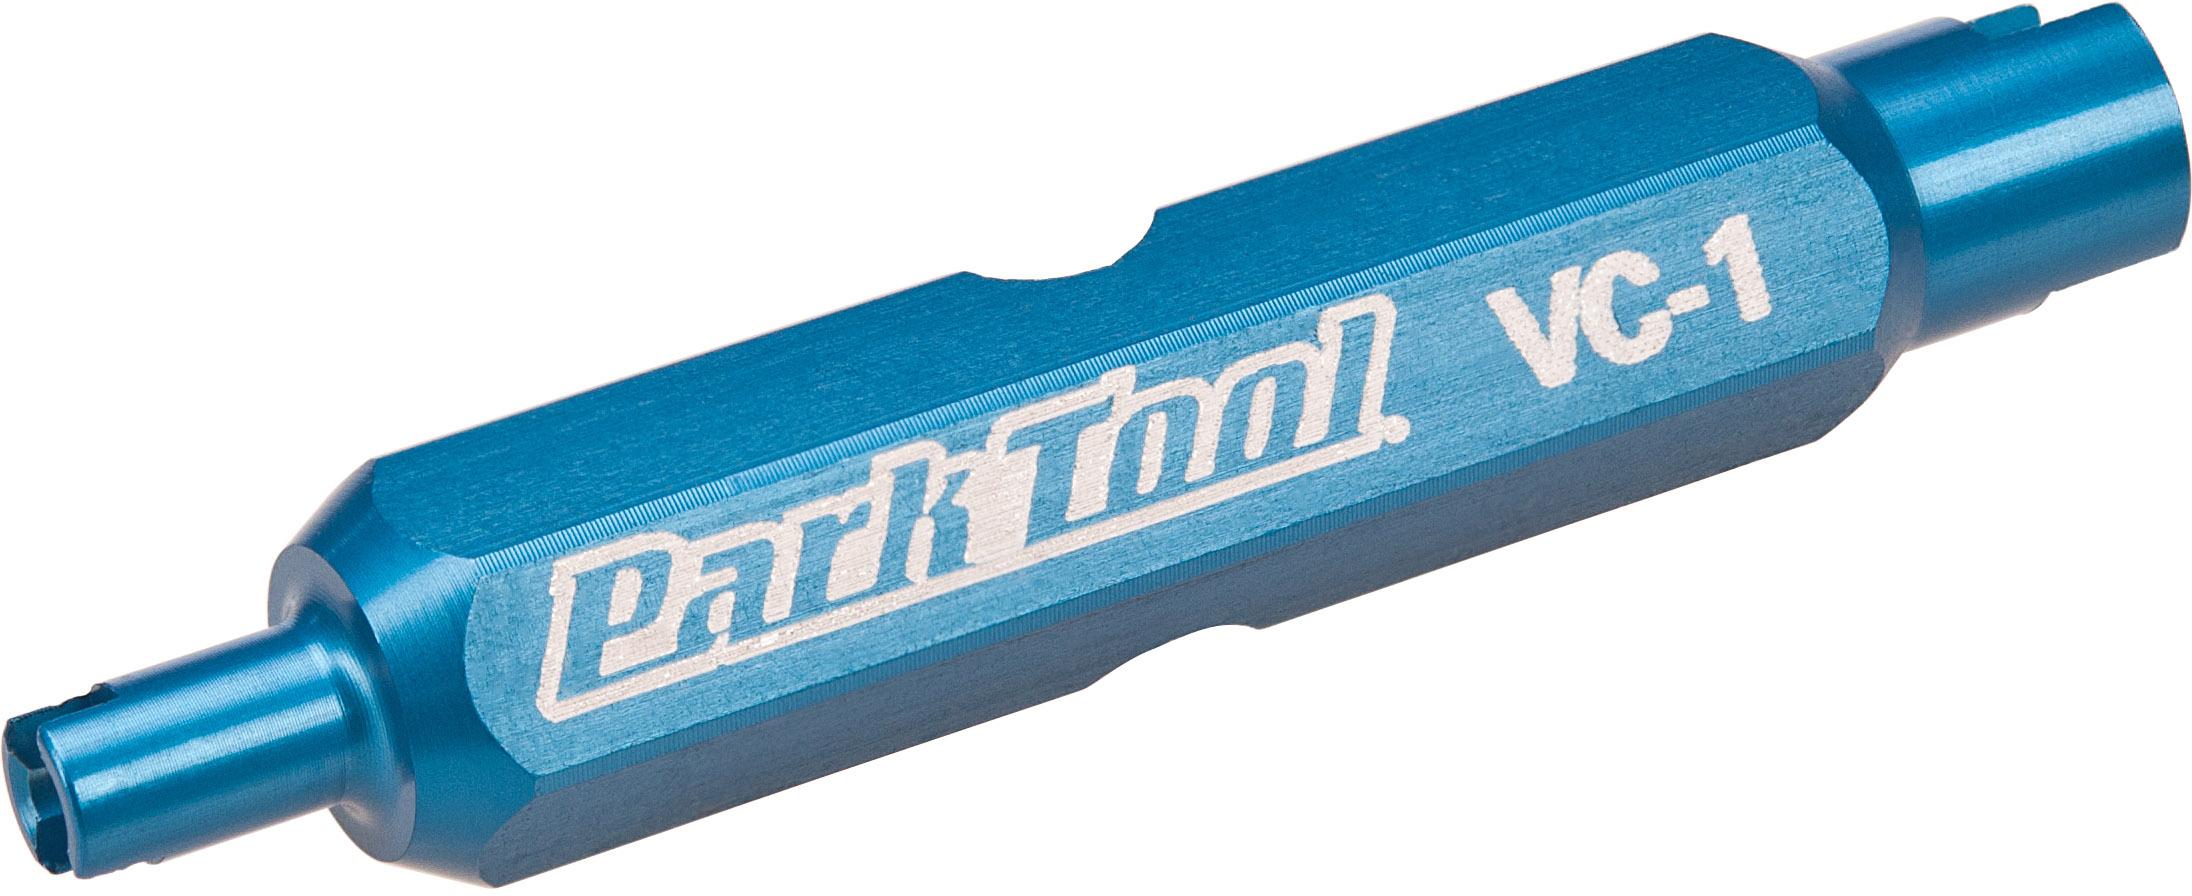 Park Tool Valve Core Tool Vc-1 - Blue